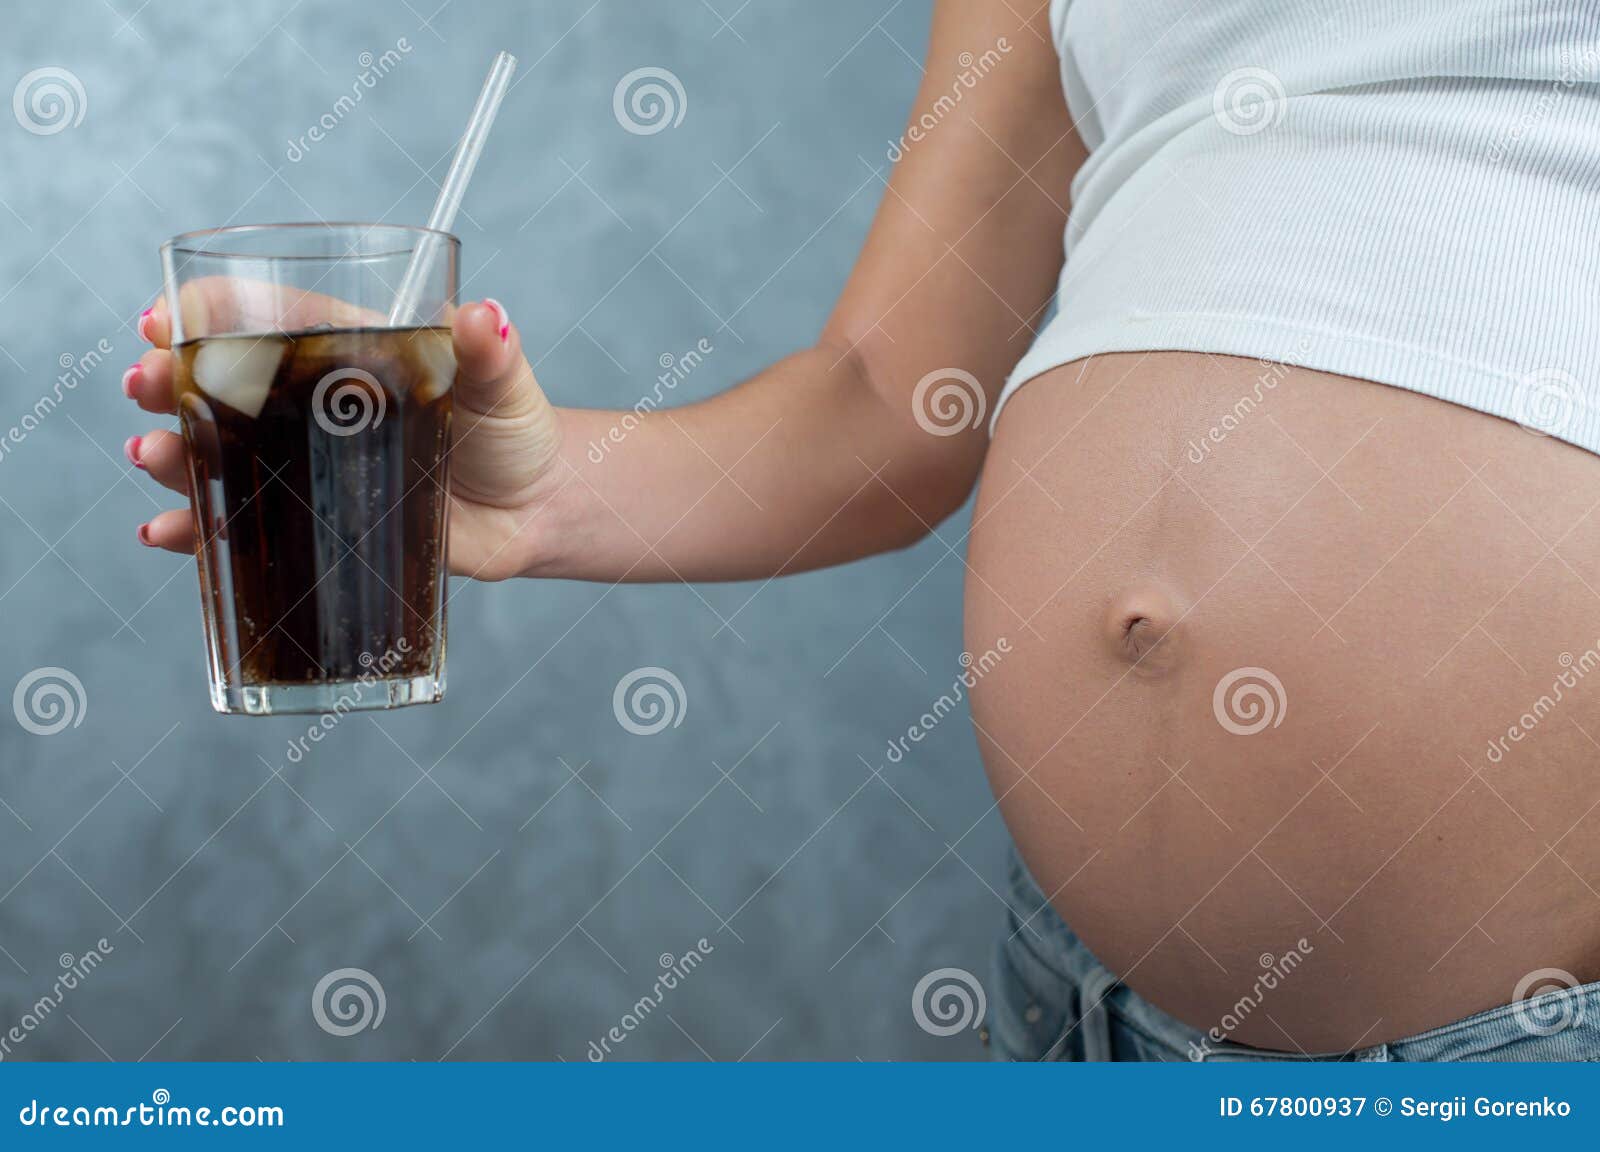 Квас беременности можно. Квас беременности. Беременное пузо пьет. Беременный живот с коктейлем. Напитки для беременных.